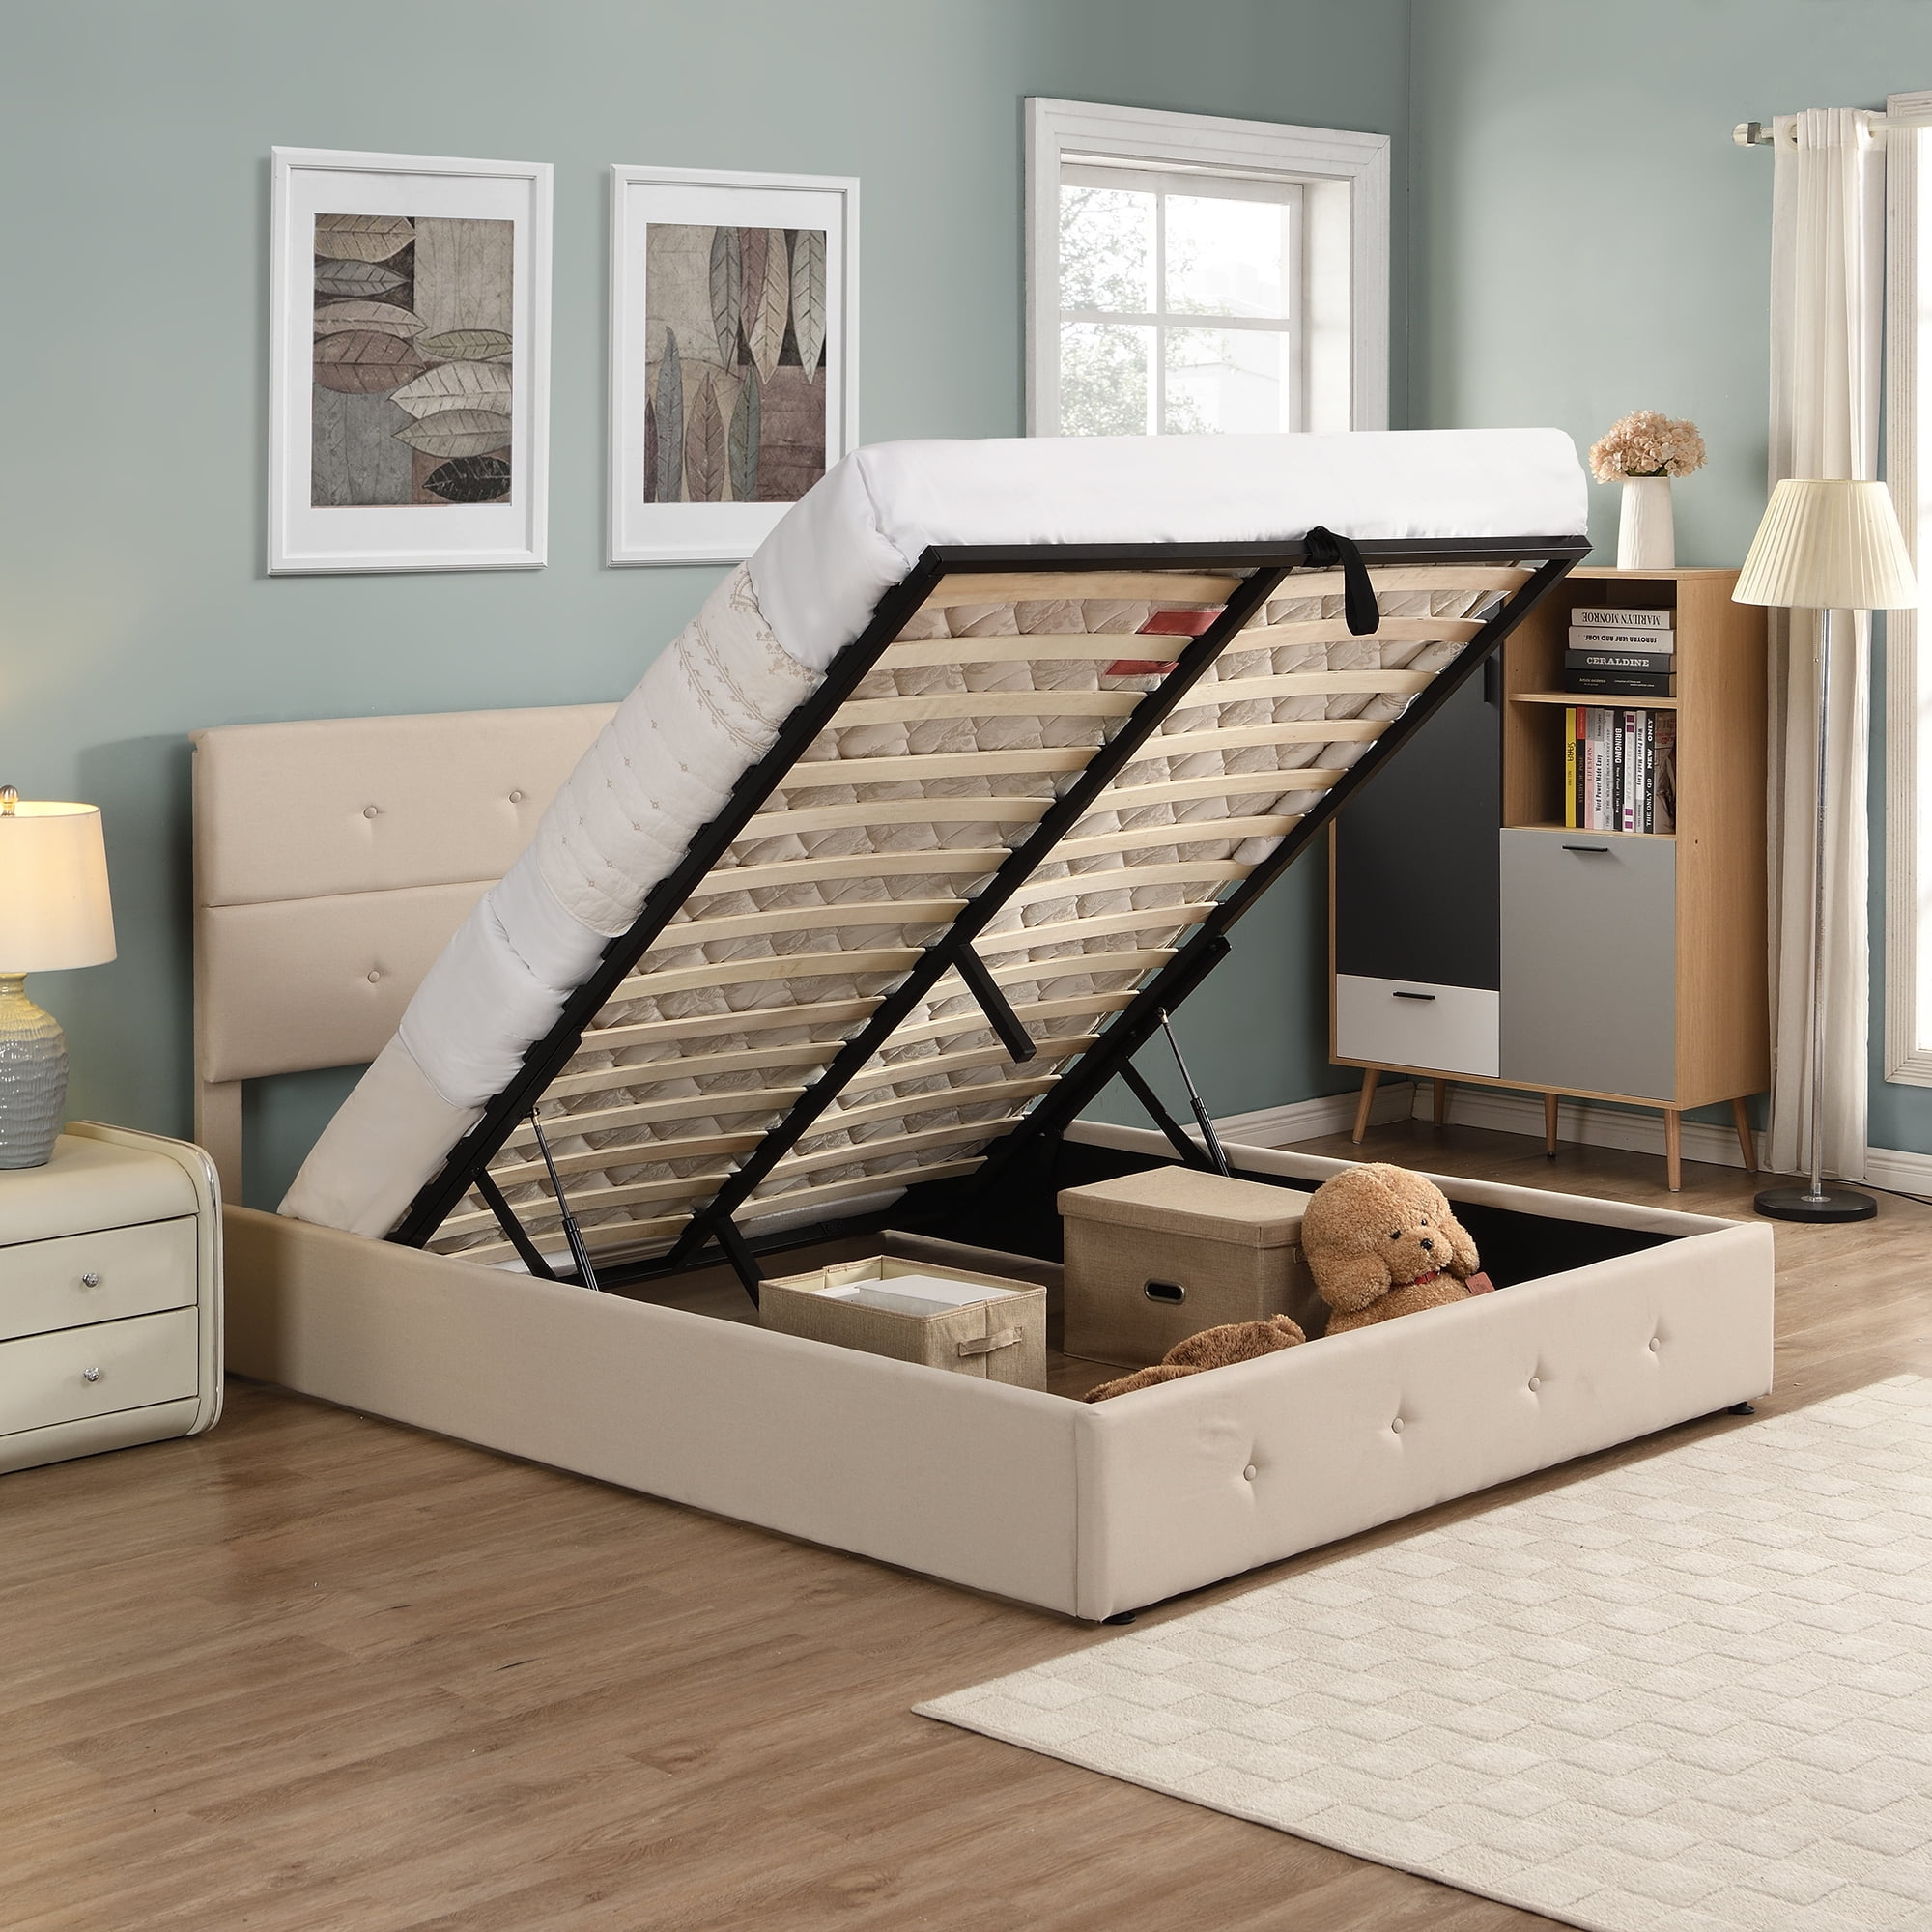 Beige Upholstered Platform Bed Frame, Queen Bed Frames With Underneath Storage